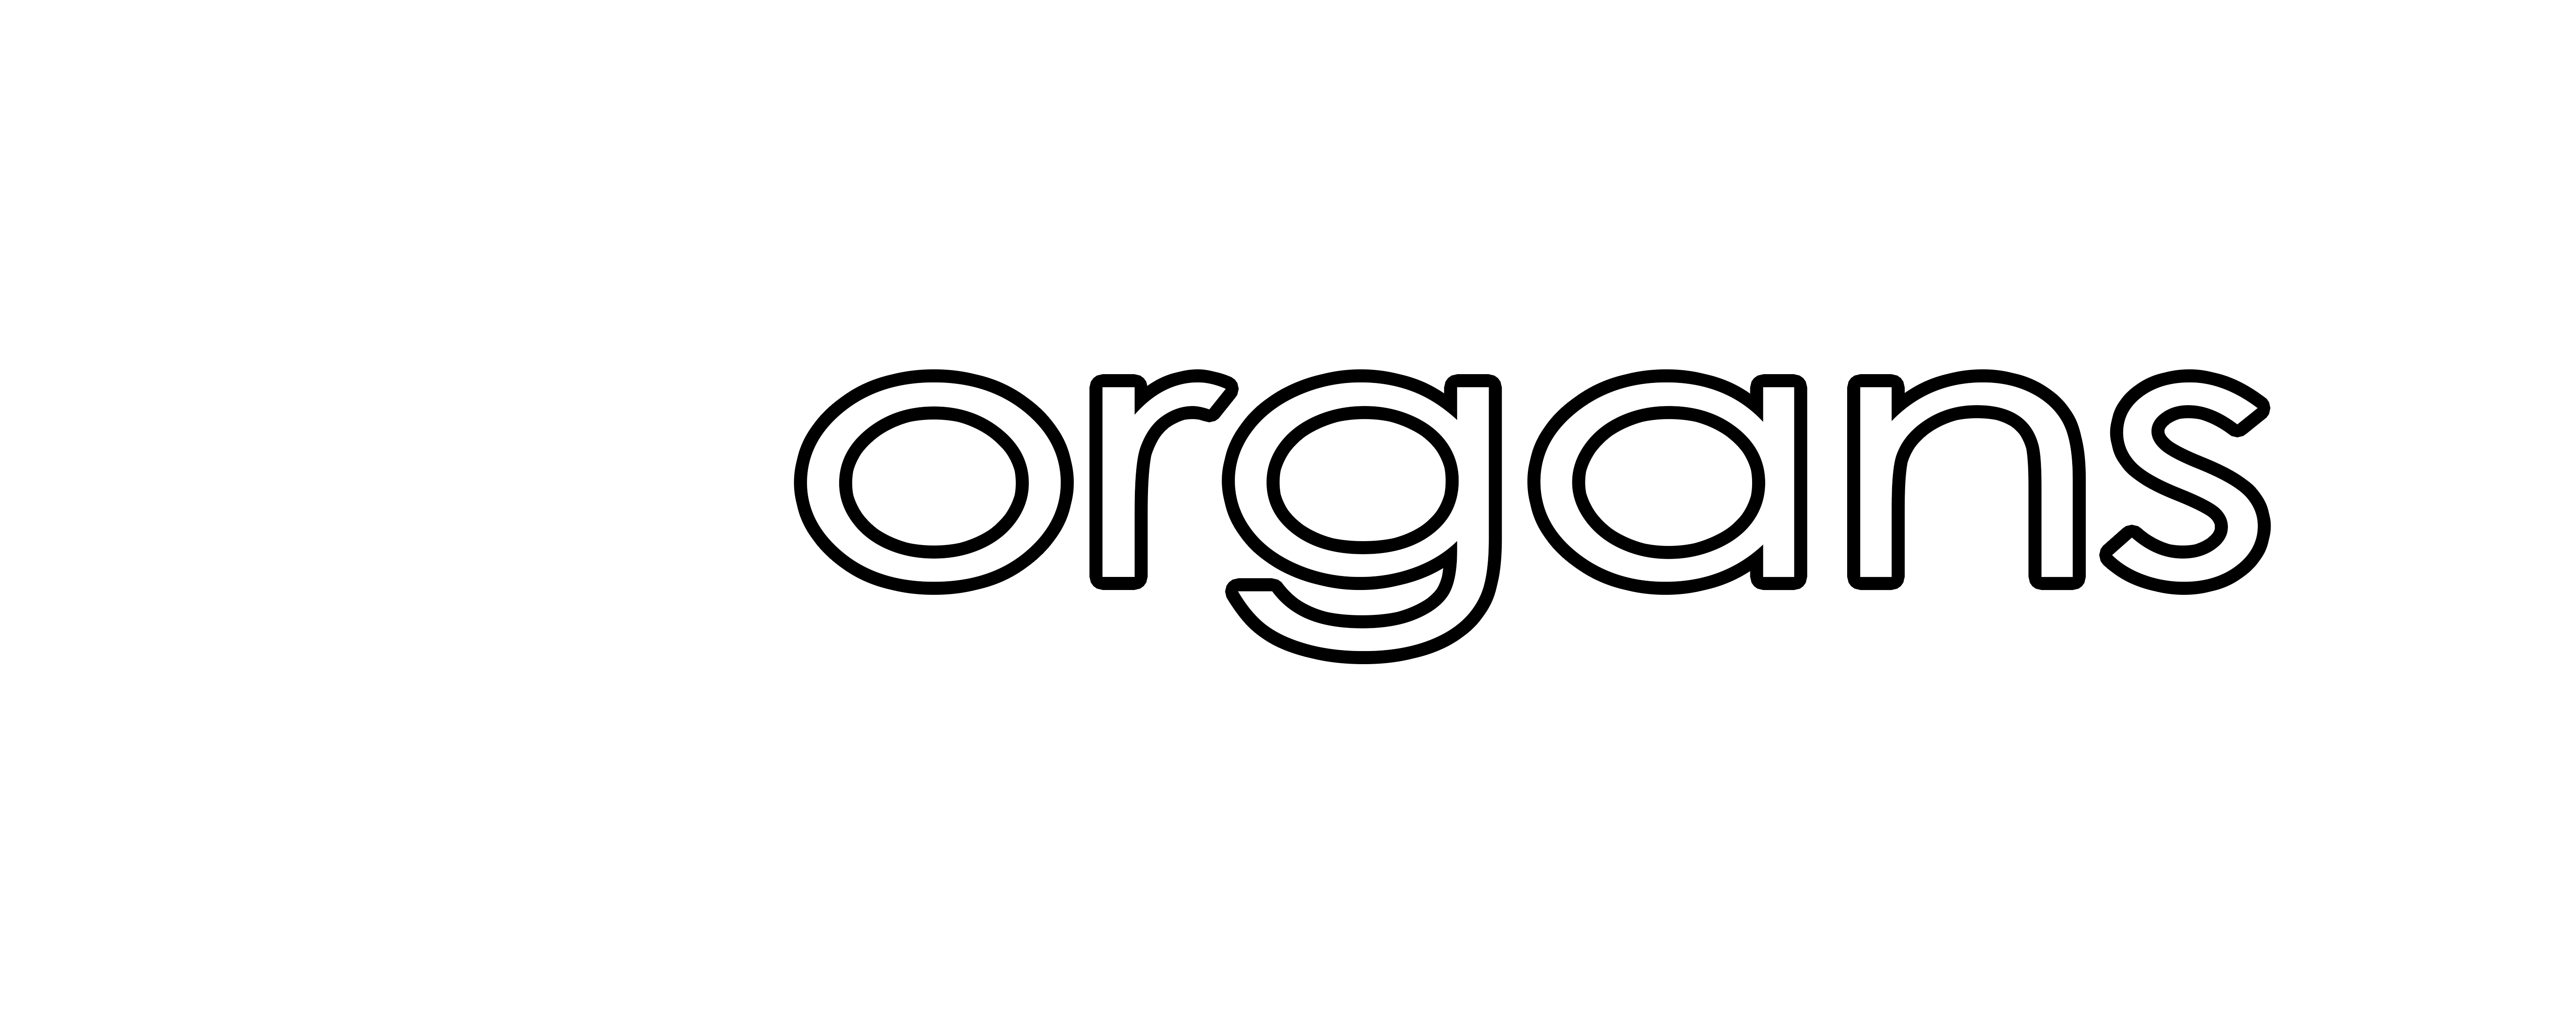 Morgans Windows, Doors & Conservatories 